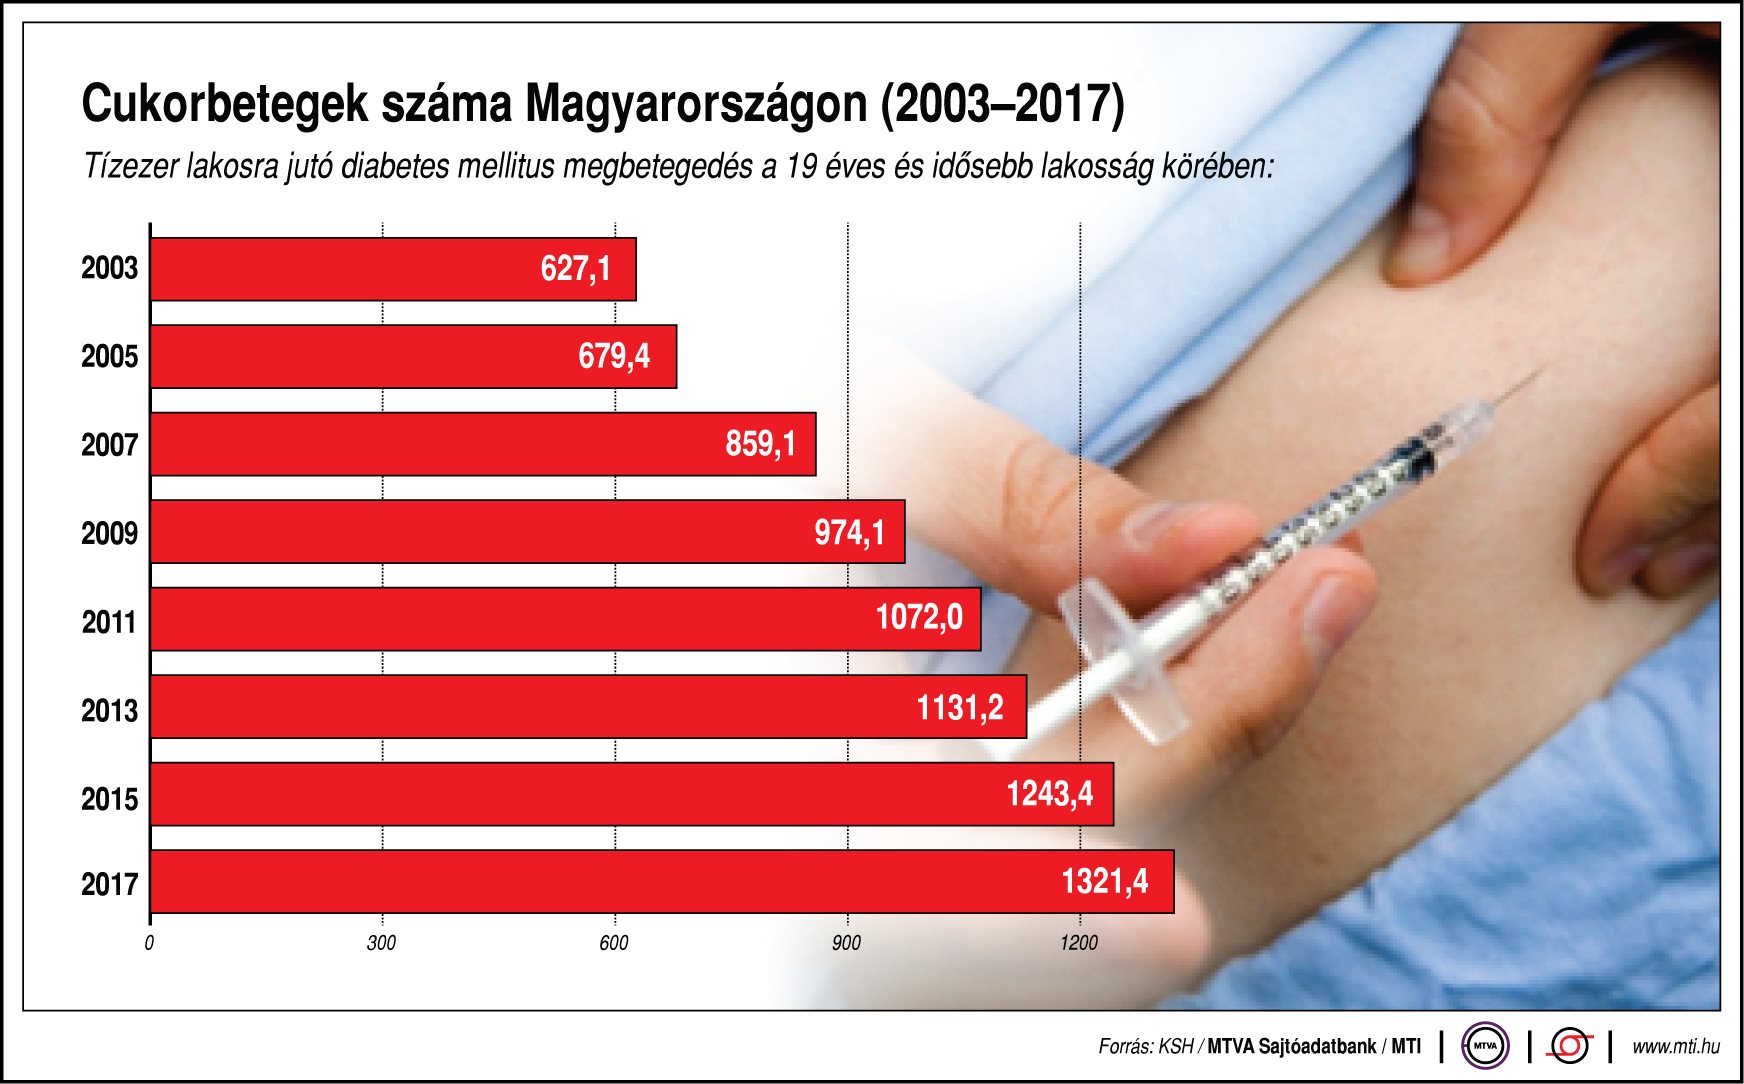 cukorbetegség magyarországon